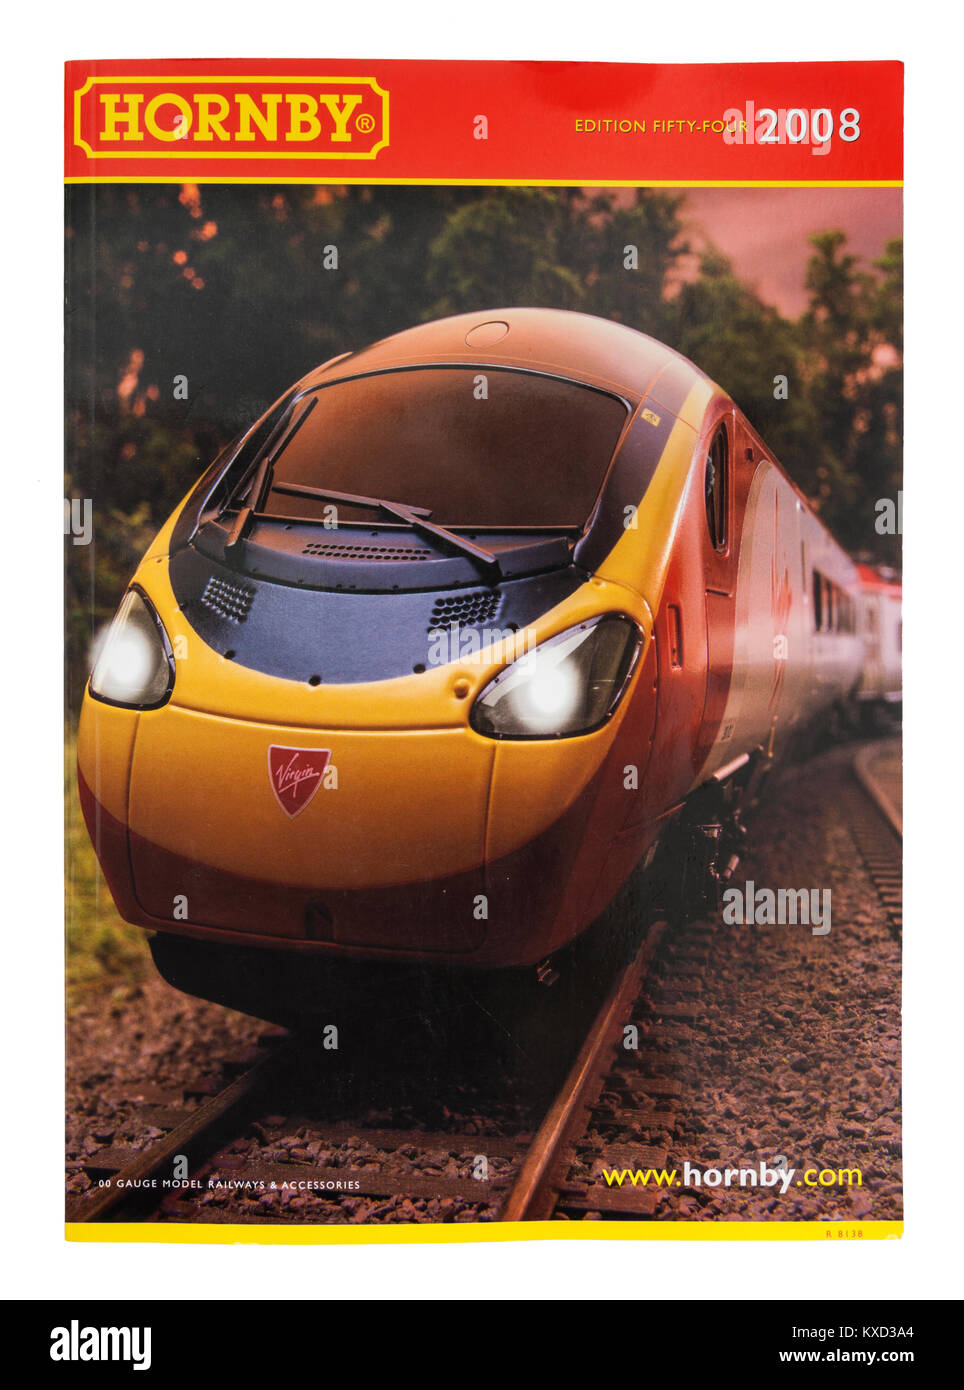 Hornby ferrovie modello catalogo da 2008 (edizione 54) con Virgin Trains locomotore sul coperchio anteriore Foto Stock